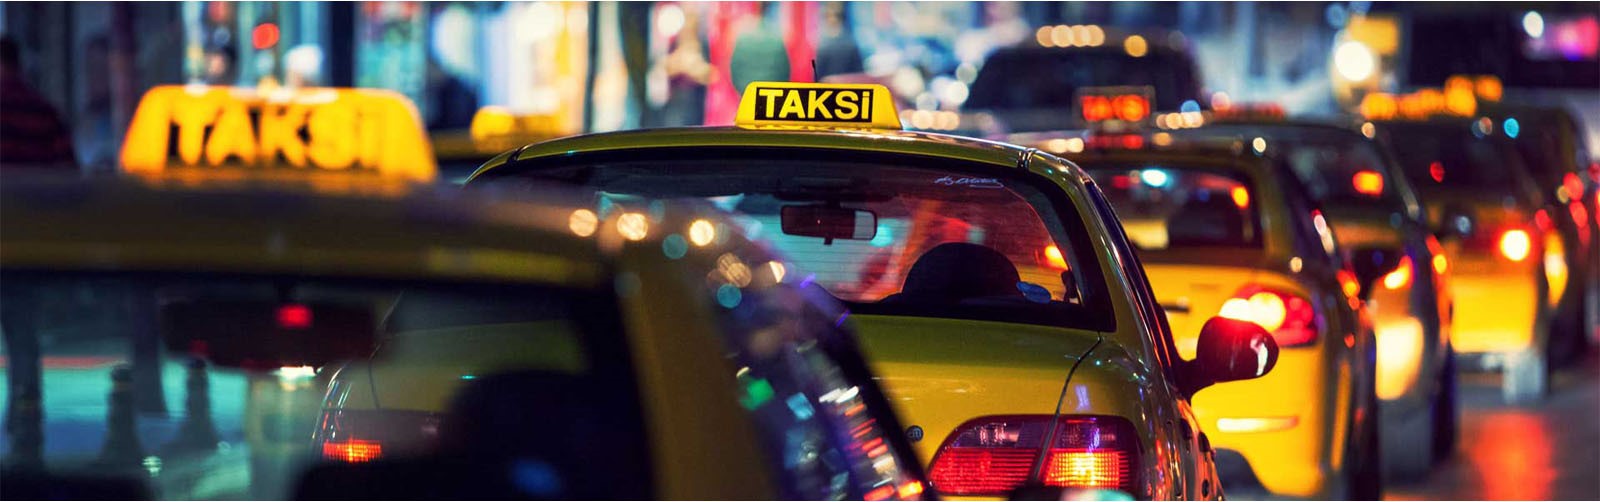 Mobilbil Taksi Cozumleri